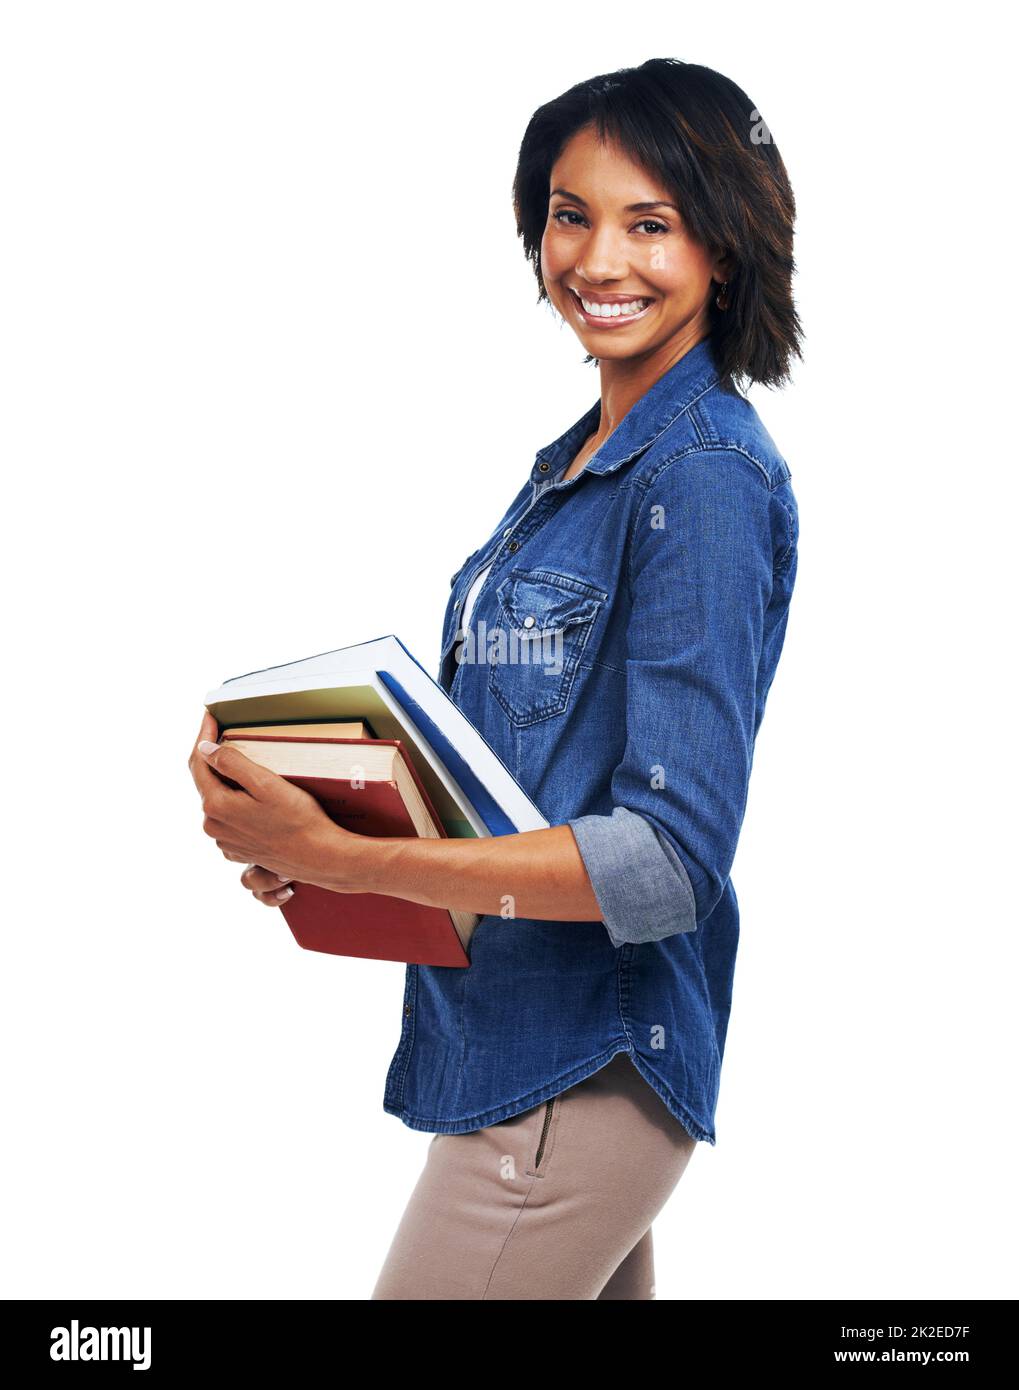 Amante del libro. Una bella giovane donna che porta libri mentre è isolata su uno sfondo bianco. Foto Stock